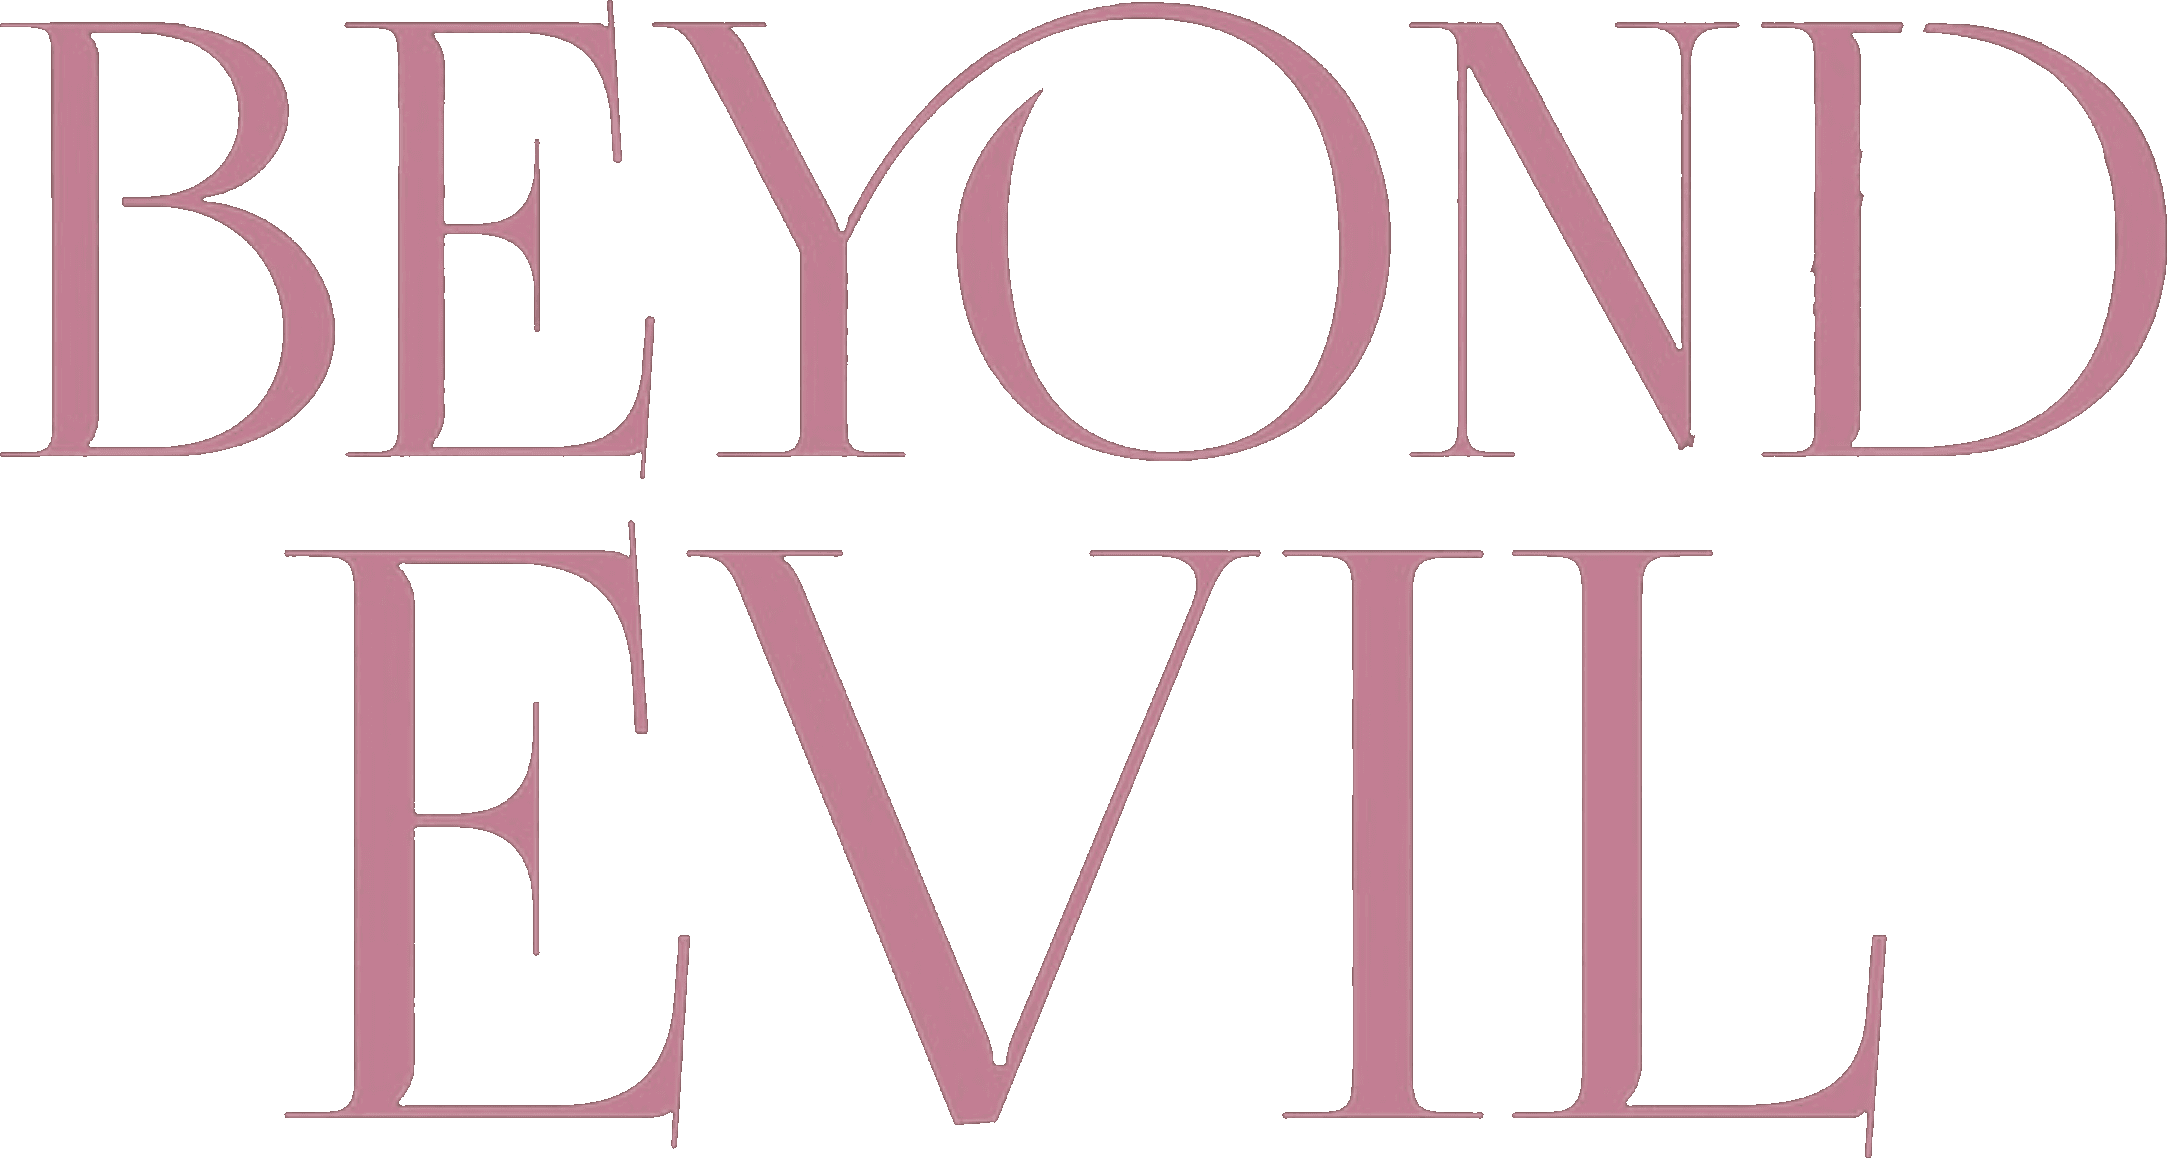 Beyond Evil logo